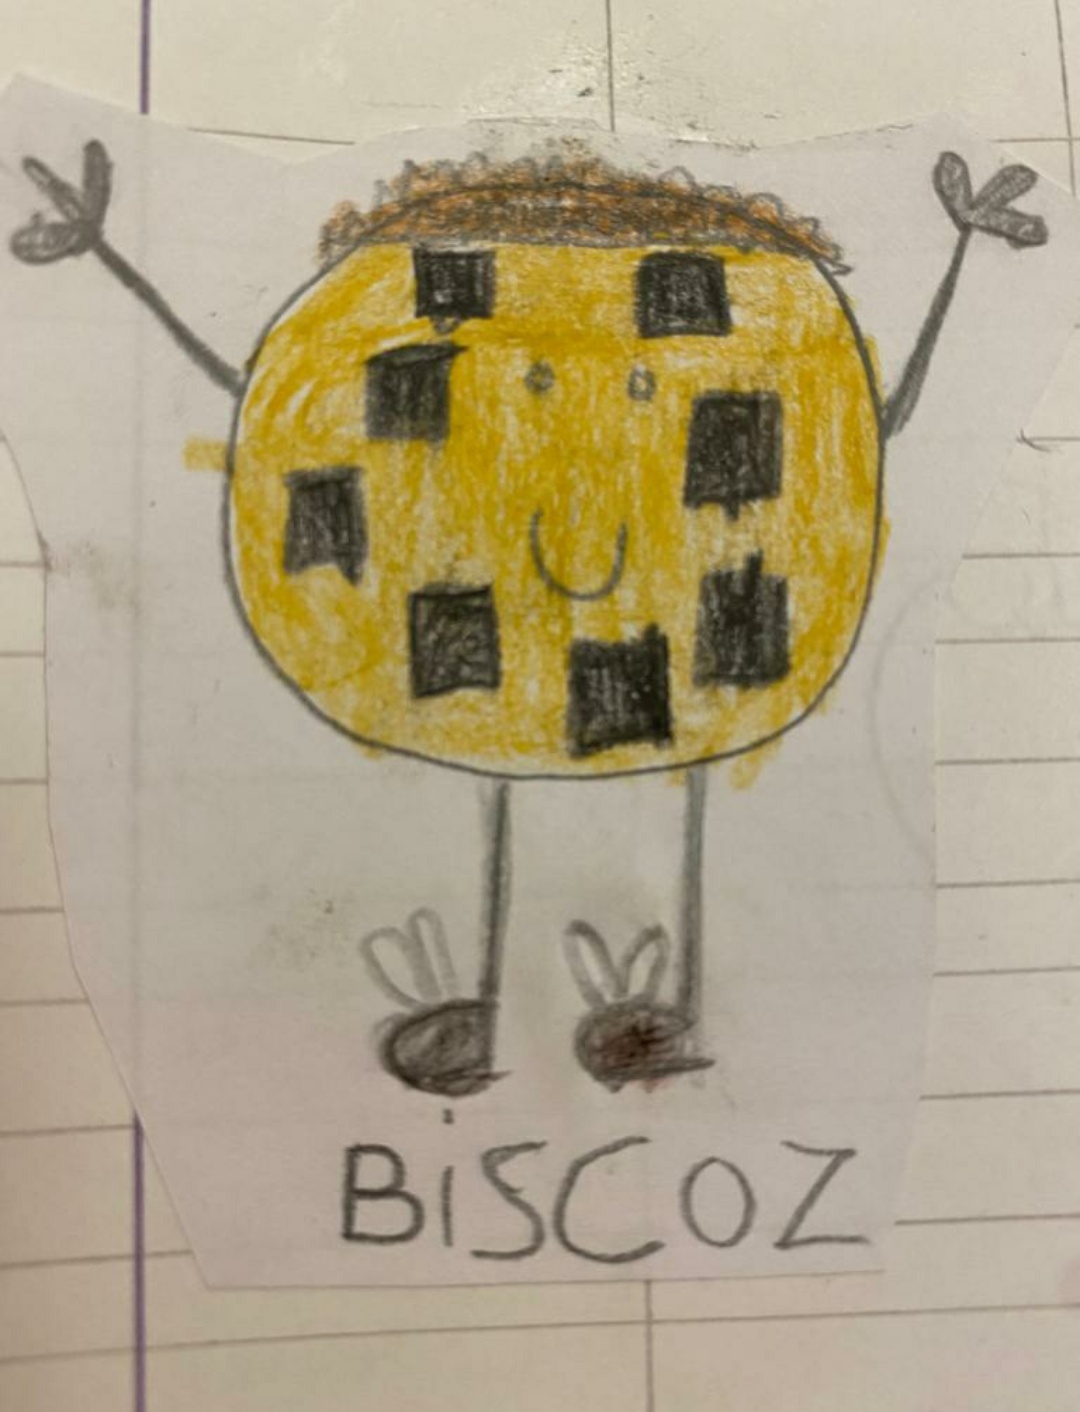 BiscoZ, l'amico immaginario di Nicolò (7 anni) 